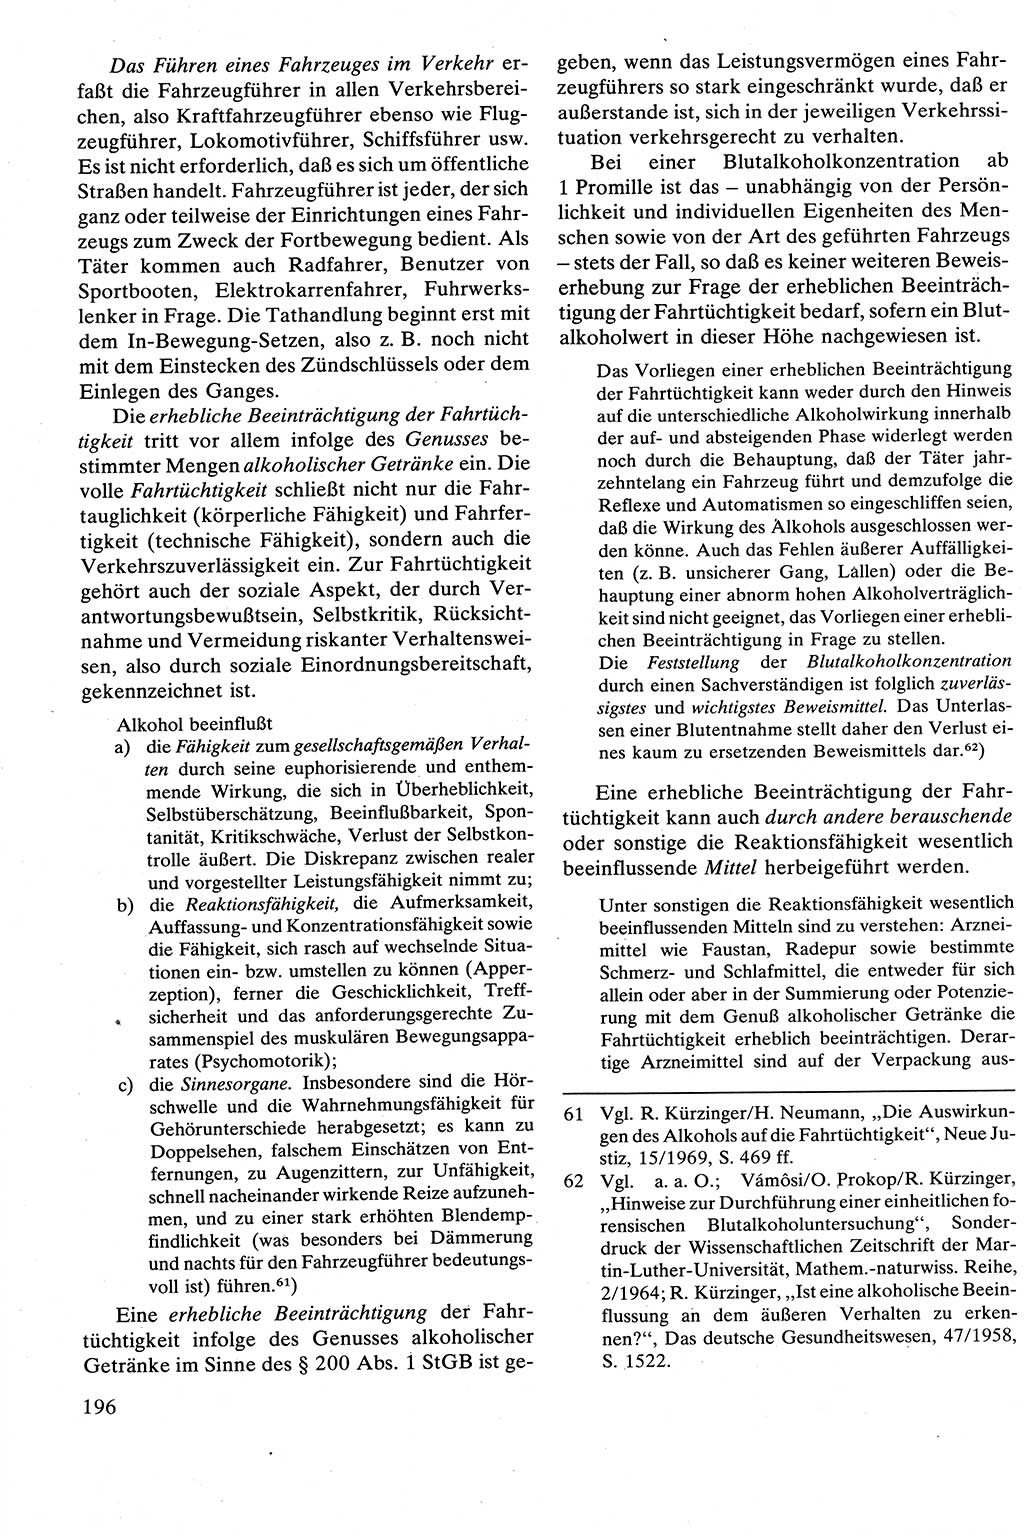 Strafrecht [Deutsche Demokratische Republik (DDR)], Besonderer Teil, Lehrbuch 1981, Seite 196 (Strafr. DDR BT Lb. 1981, S. 196)